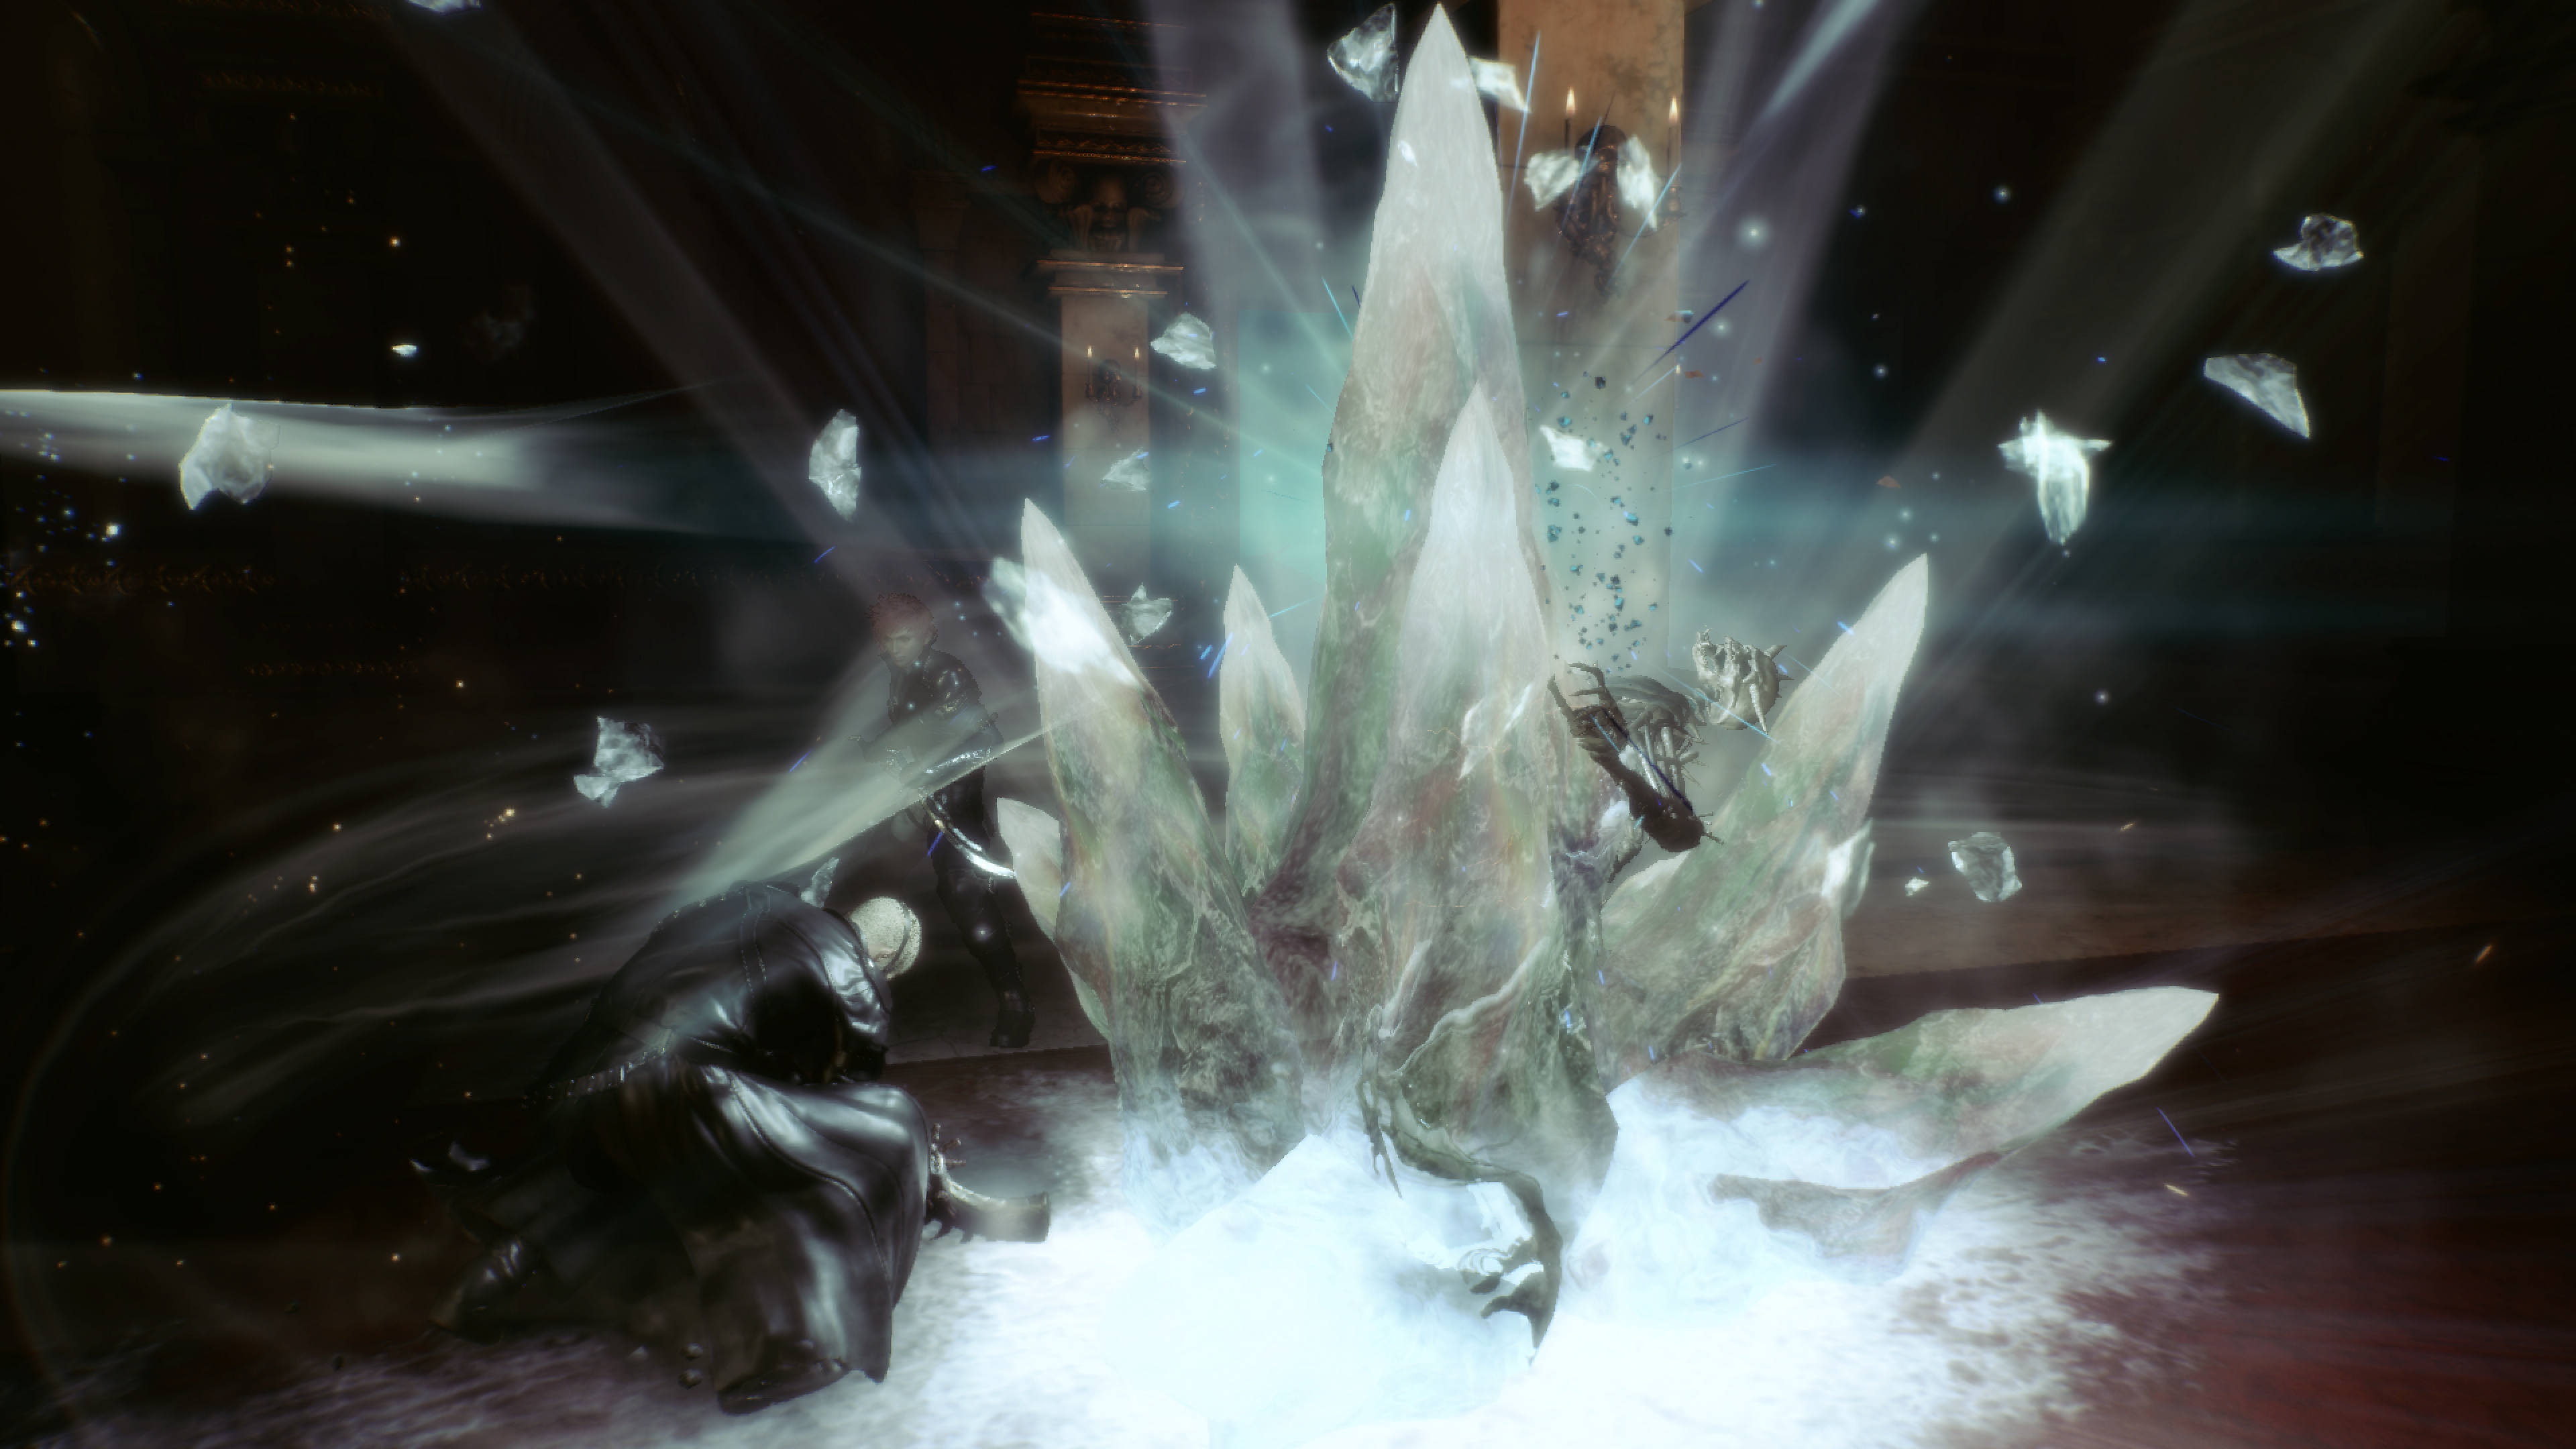 Stranger of Paradise Final Fantasy Origin – снимок экрана, на котором изображен Джек и большой осколок белого кристалла, торчащий из земли.